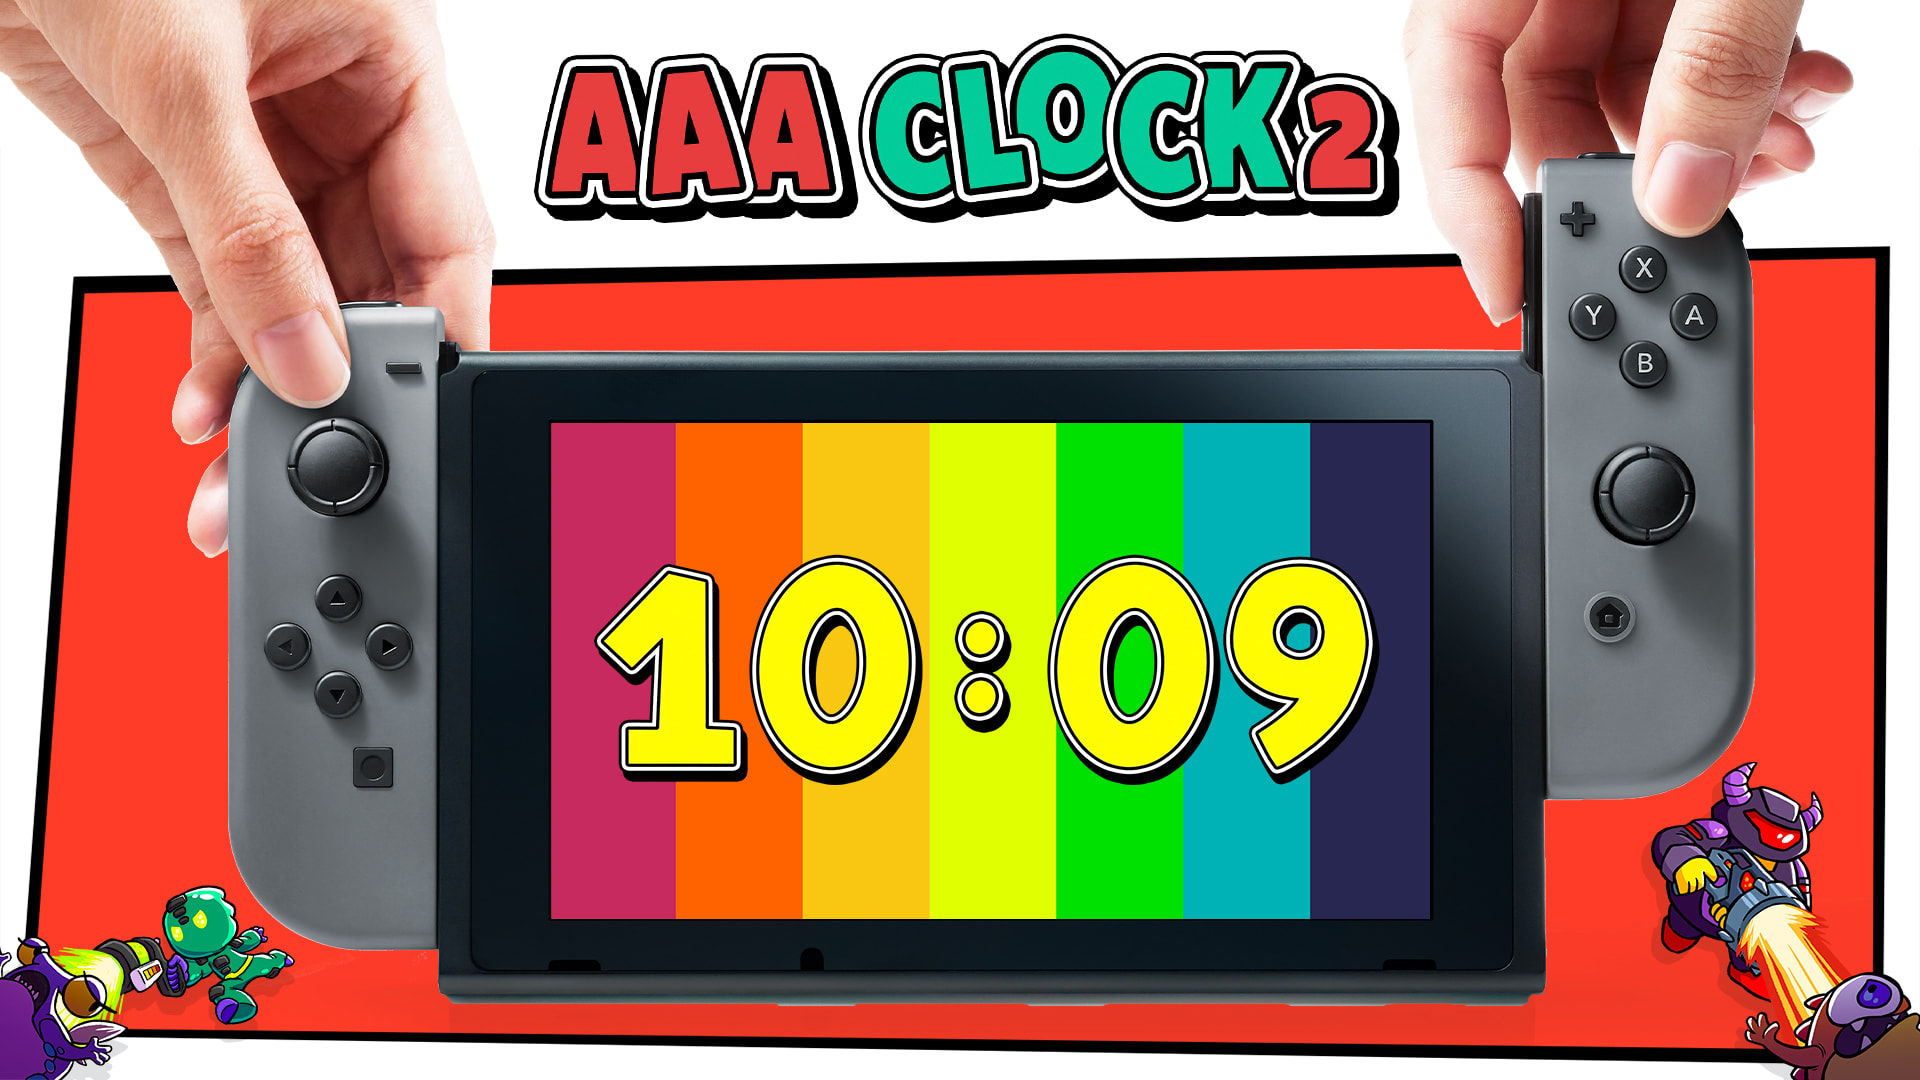 AAA Clock 2